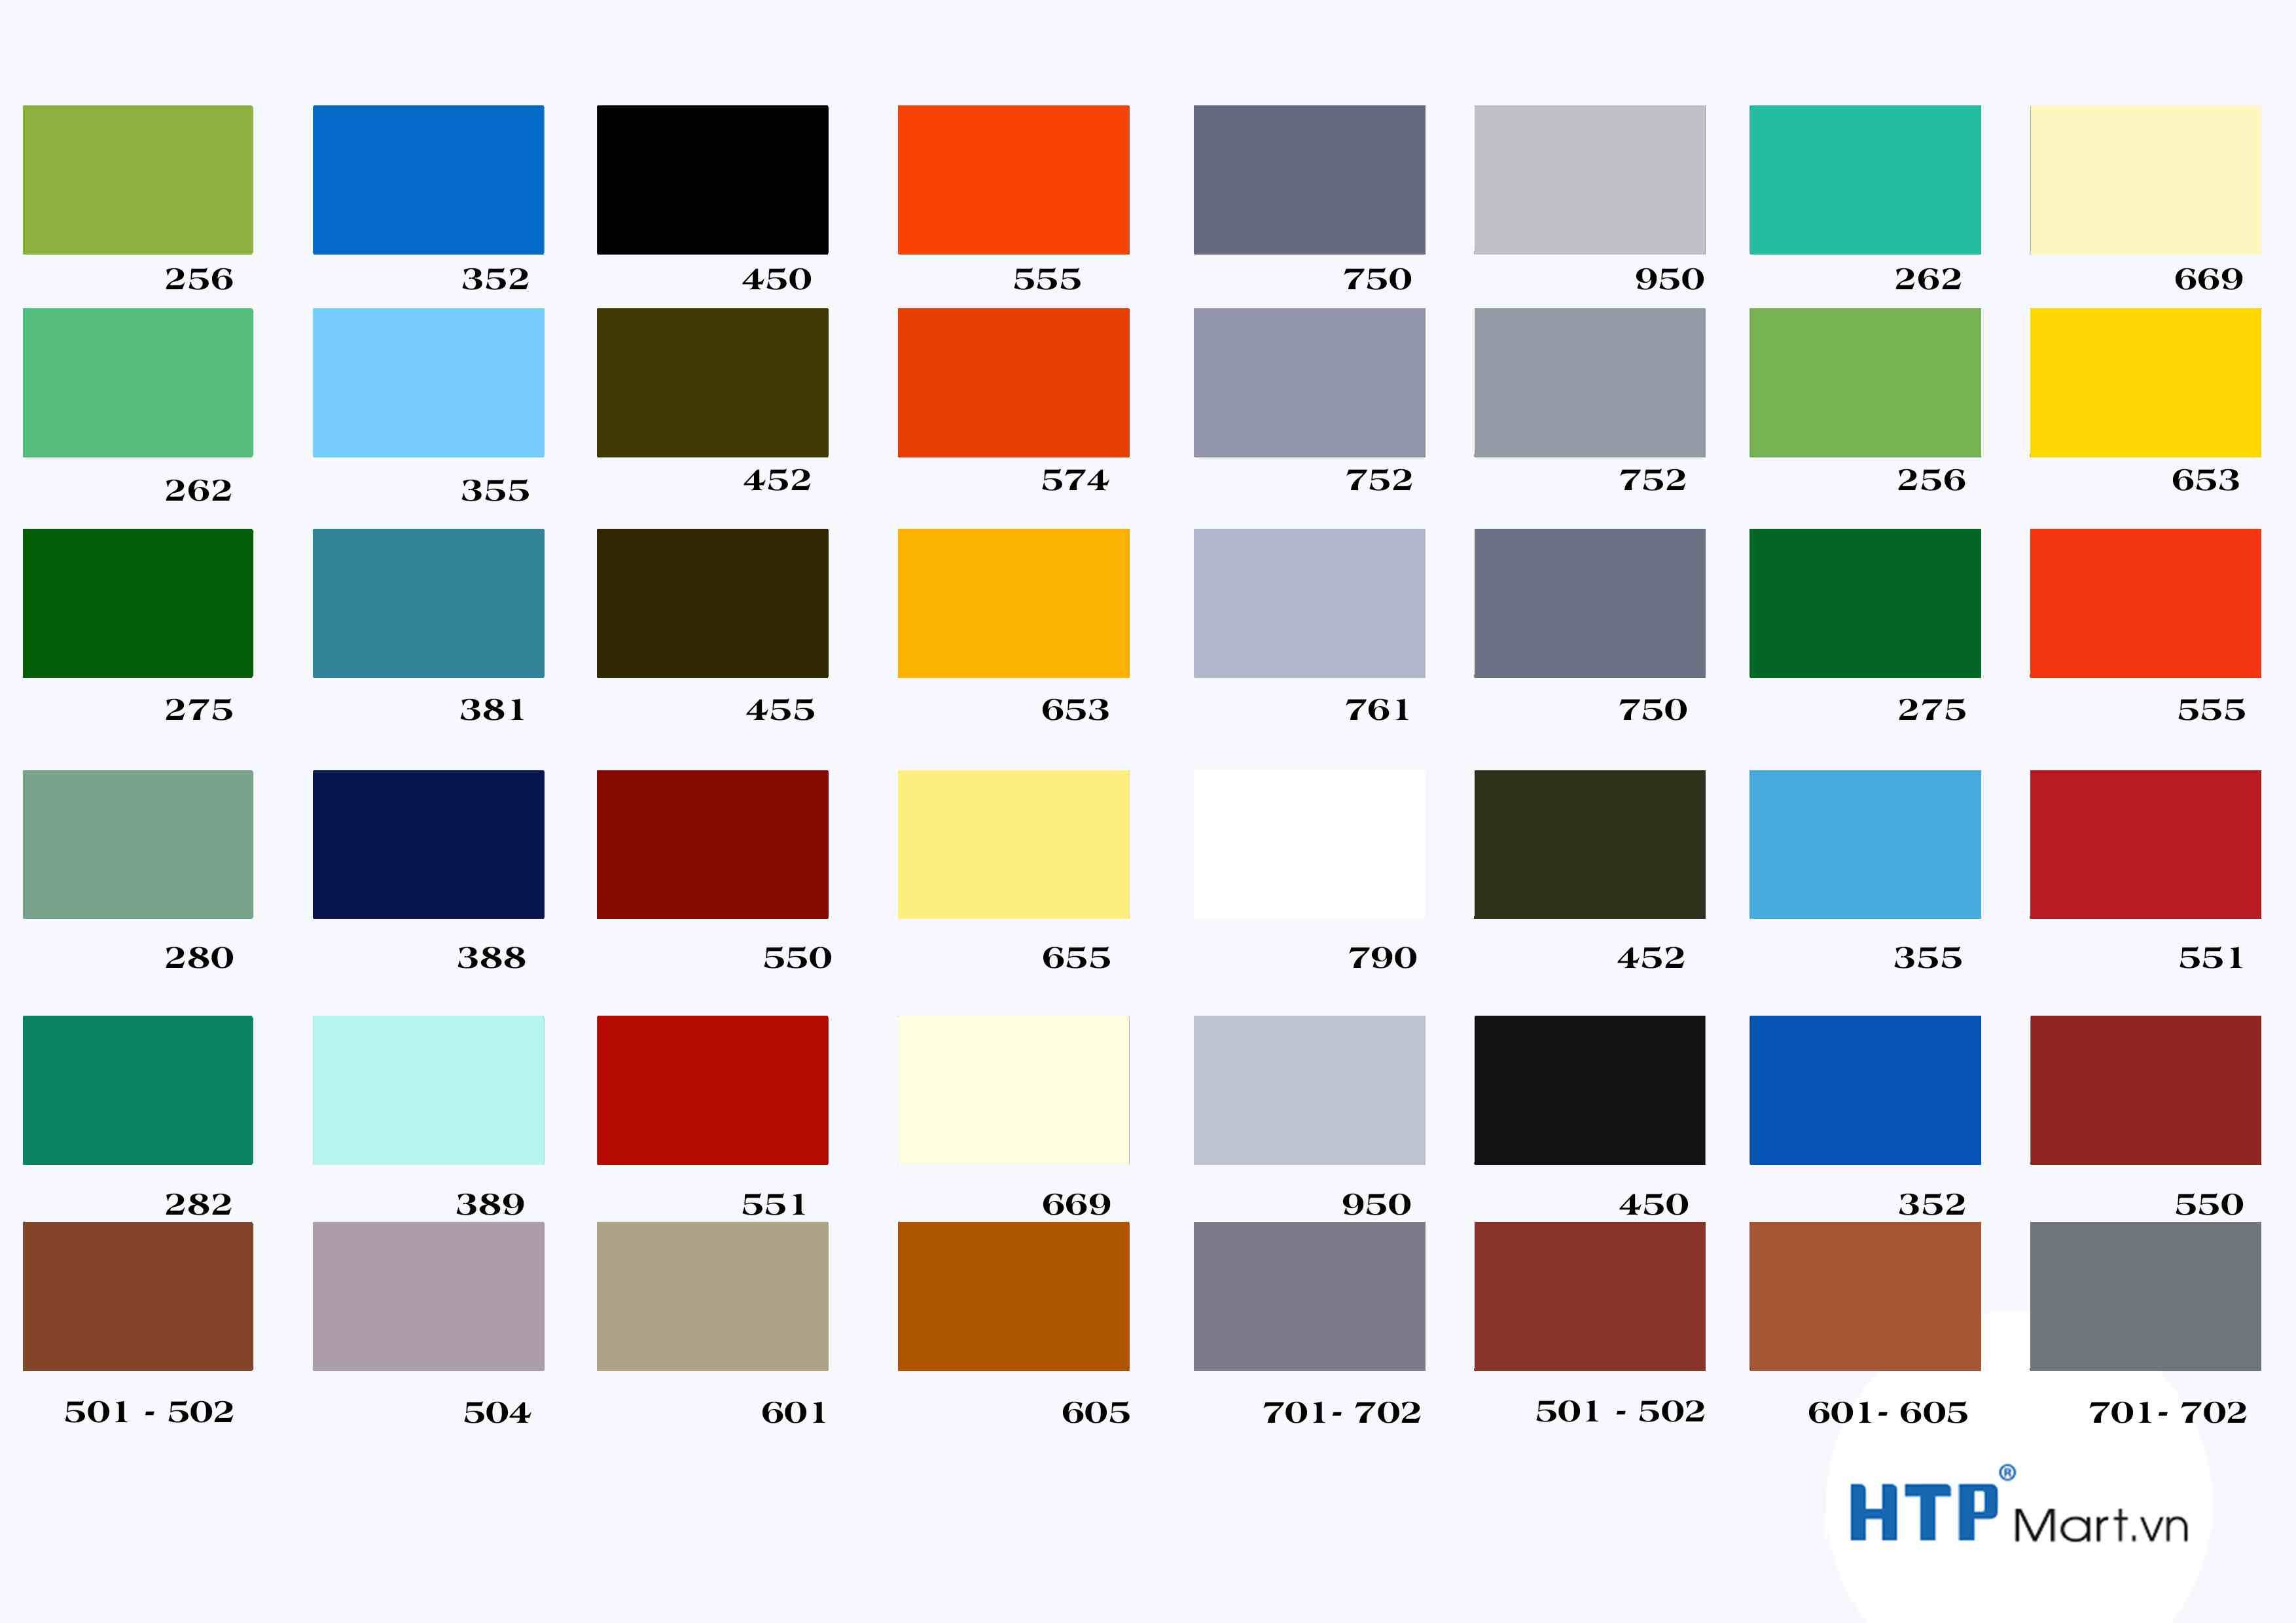 Bảng màu sơn phủ: Khám phá bảng màu sơn phủ để tìm kiếm sự lựa chọn hoàn hảo cho các sản phẩm của bạn. Với màu sắc đa dạng và chất lượng đảm bảo, bảng màu này sẽ giúp bạn tìm thấy sự kết hợp hoàn hảo giữa màu sắc và chất lượng cho sản phẩm của bạn.